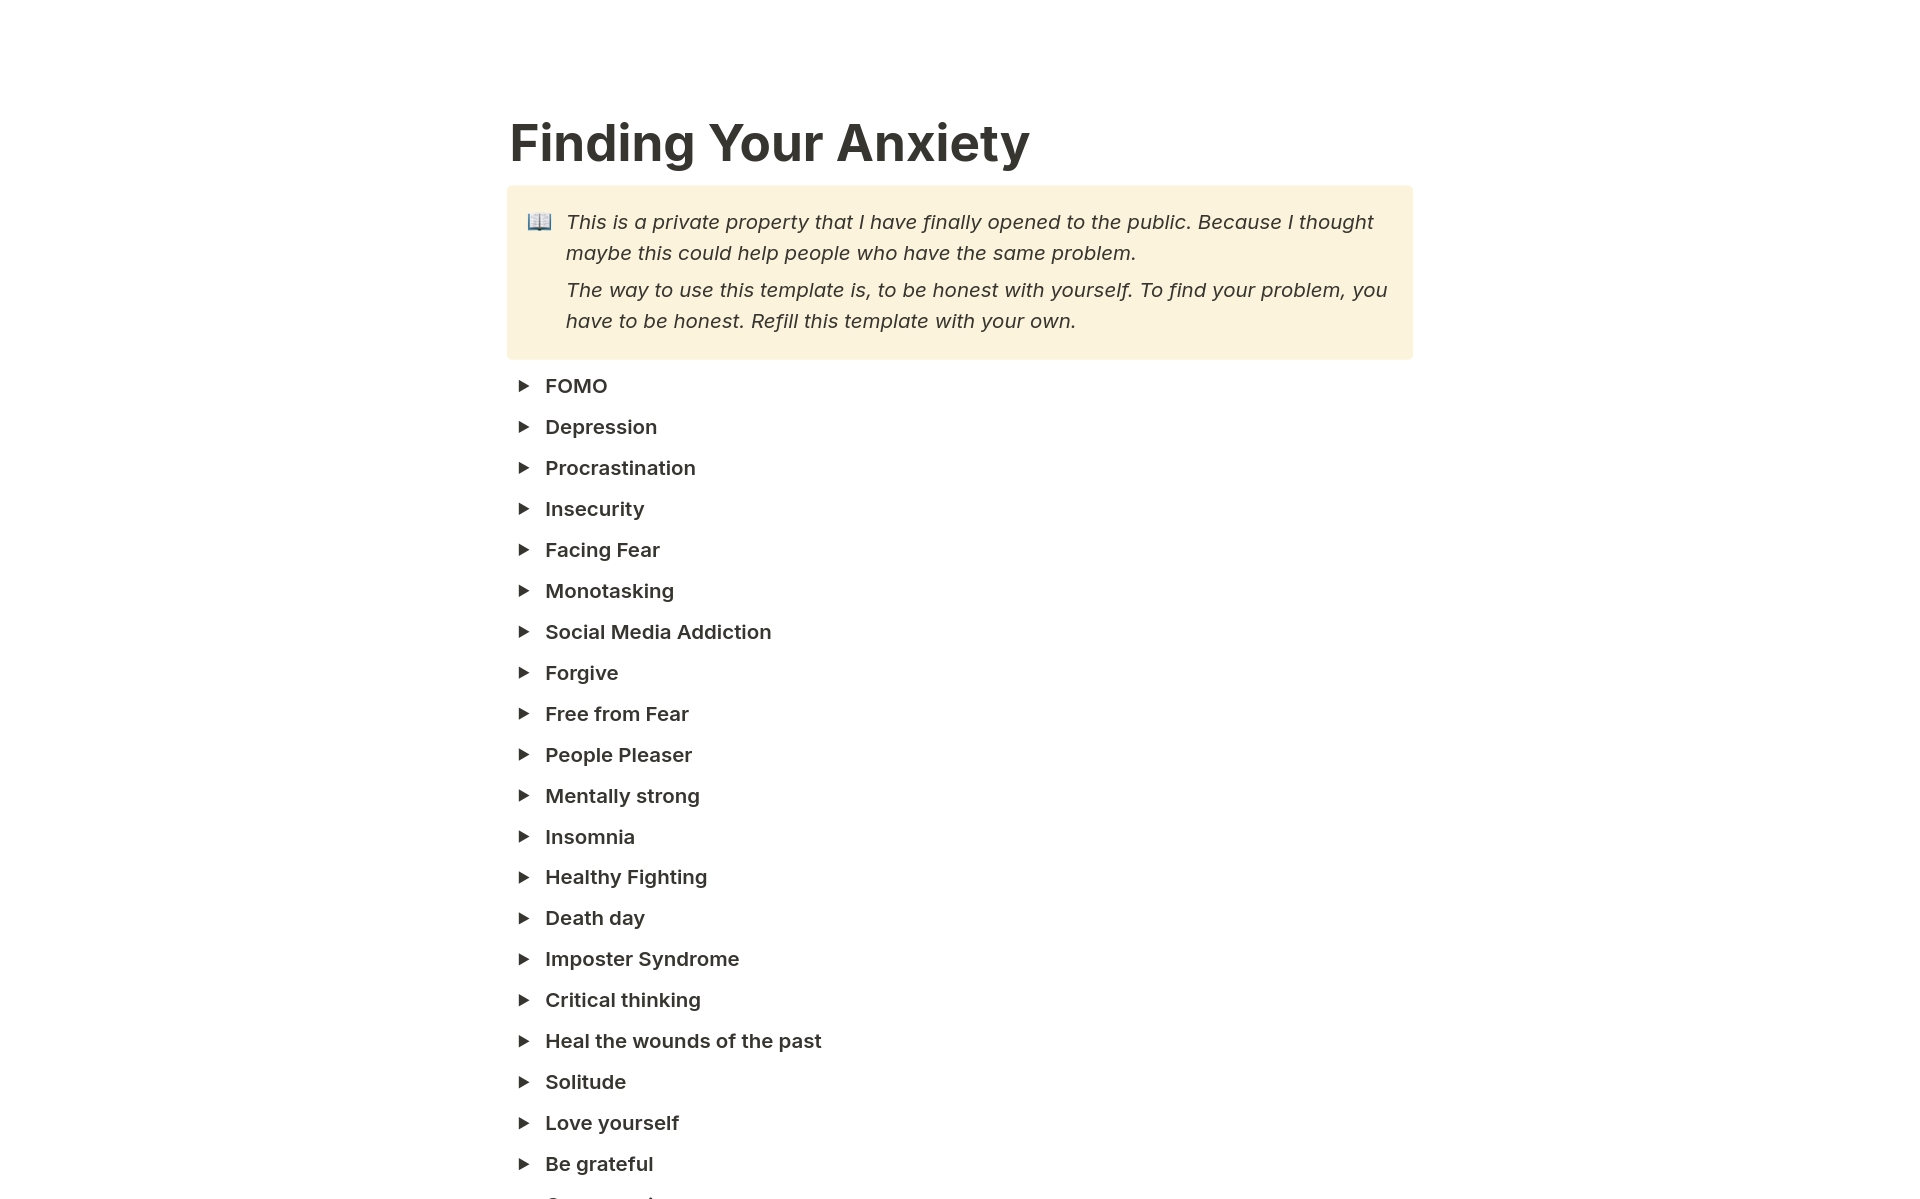 Vista previa de plantilla para Finding Your Anxiety